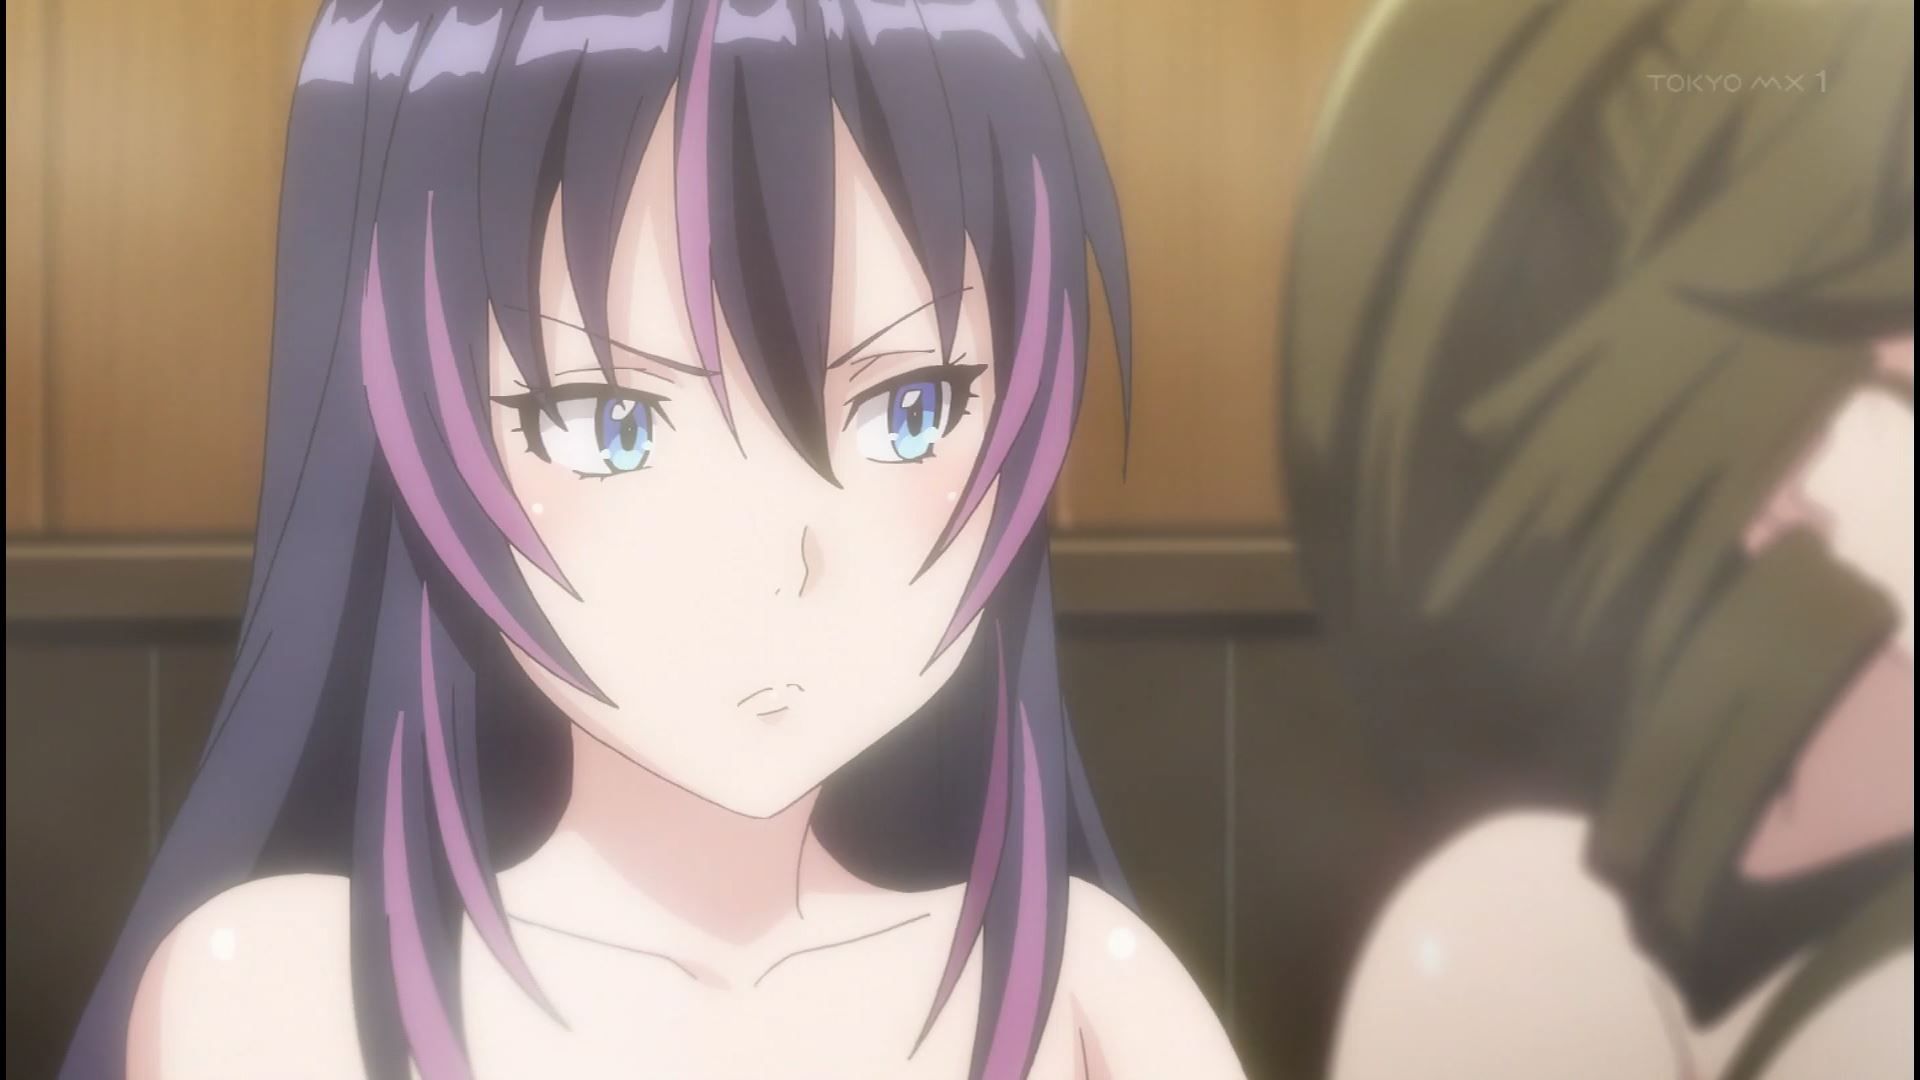 Anime [Kandagawa JETGIRLS] 8 episodes of girls erotic round-view bath bathing scene! 22